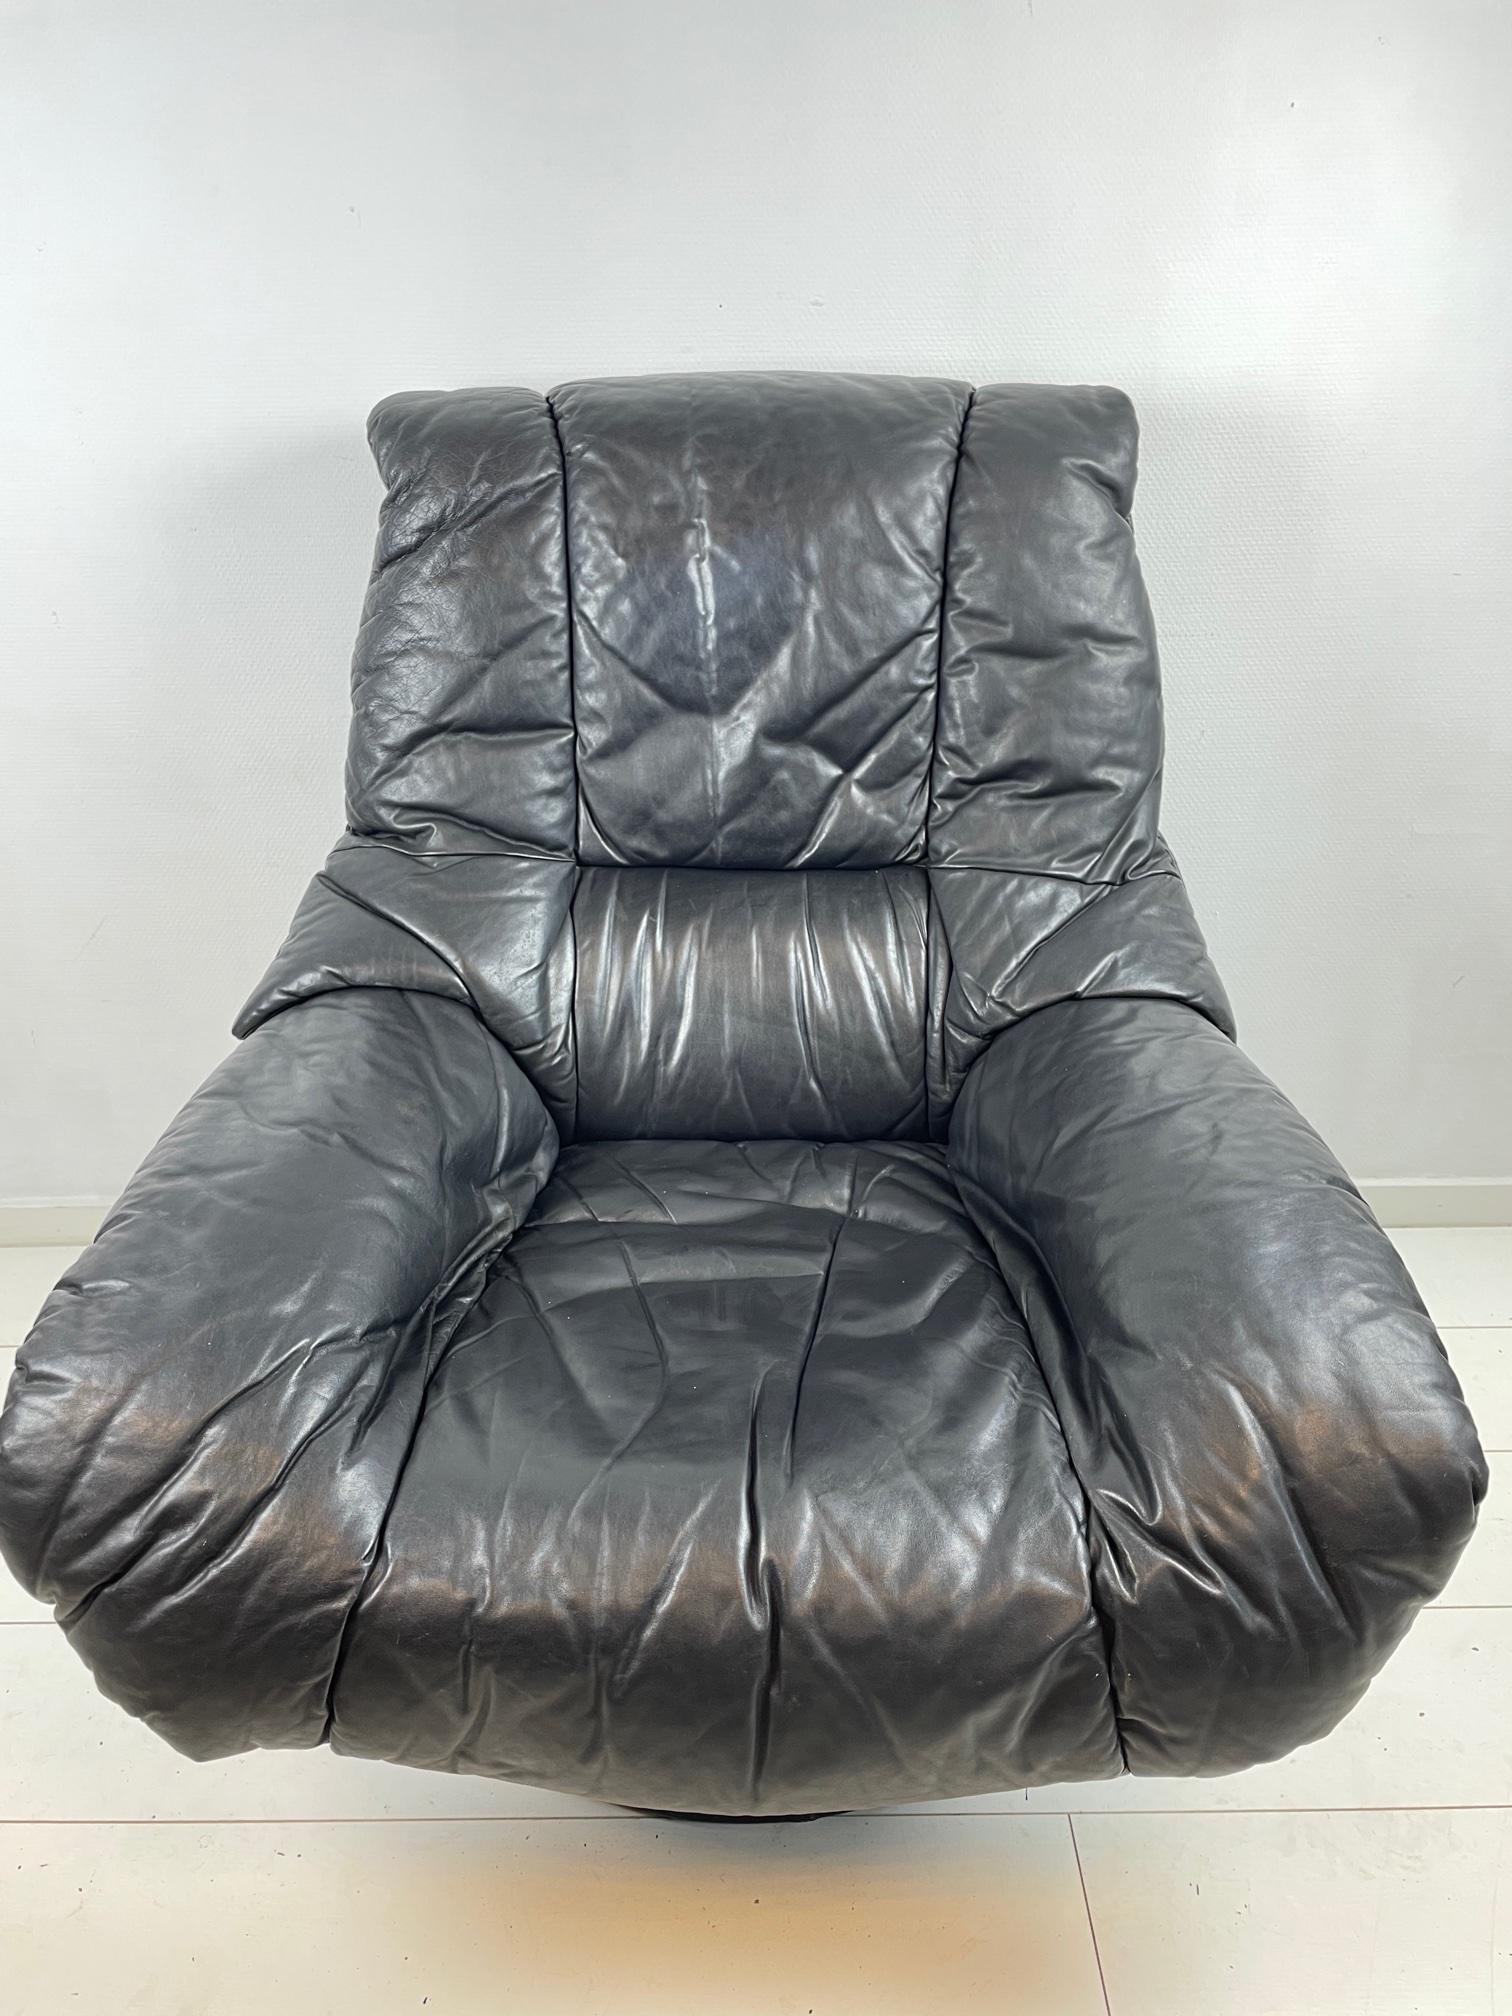 Der absolut entspannteste Stuhl aller Zeiten! Dieser Drehsessel ist nicht nur eine Augenweide, sondern auch ein Muss für alle, die sich gerne auf die beste Art und Weise entspannen. Der aus schwarzem Leder gefertigte Stuhl sieht gut aus und sitzt